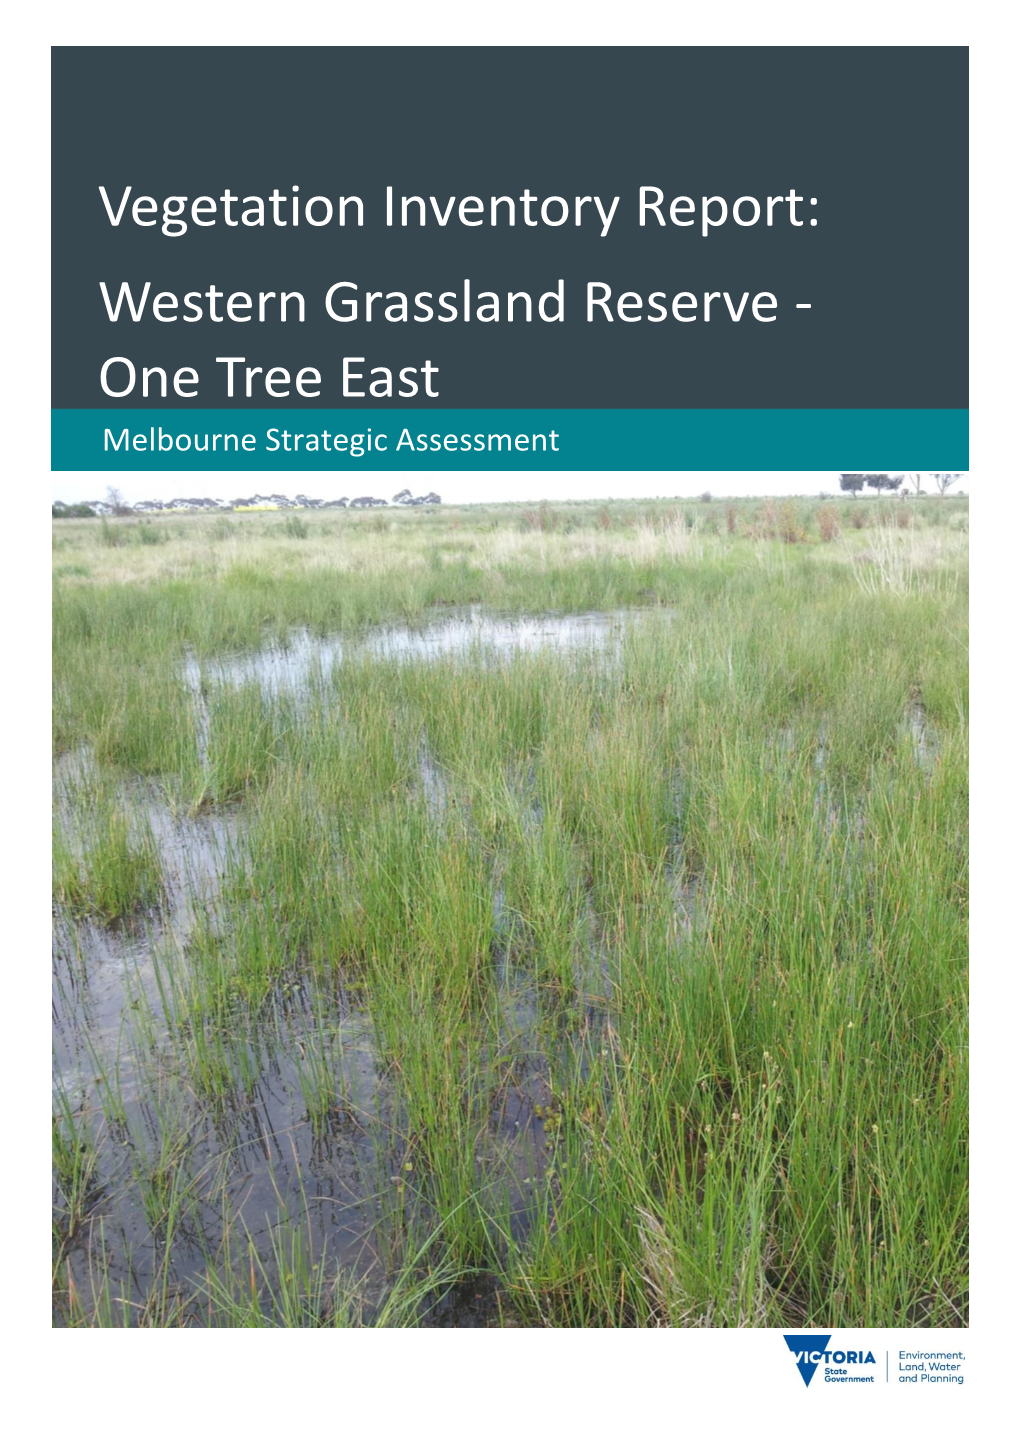 Vegetation Inventory Report: Western Grassland Reserve - One Tree East Melbourne Strategic Assessment